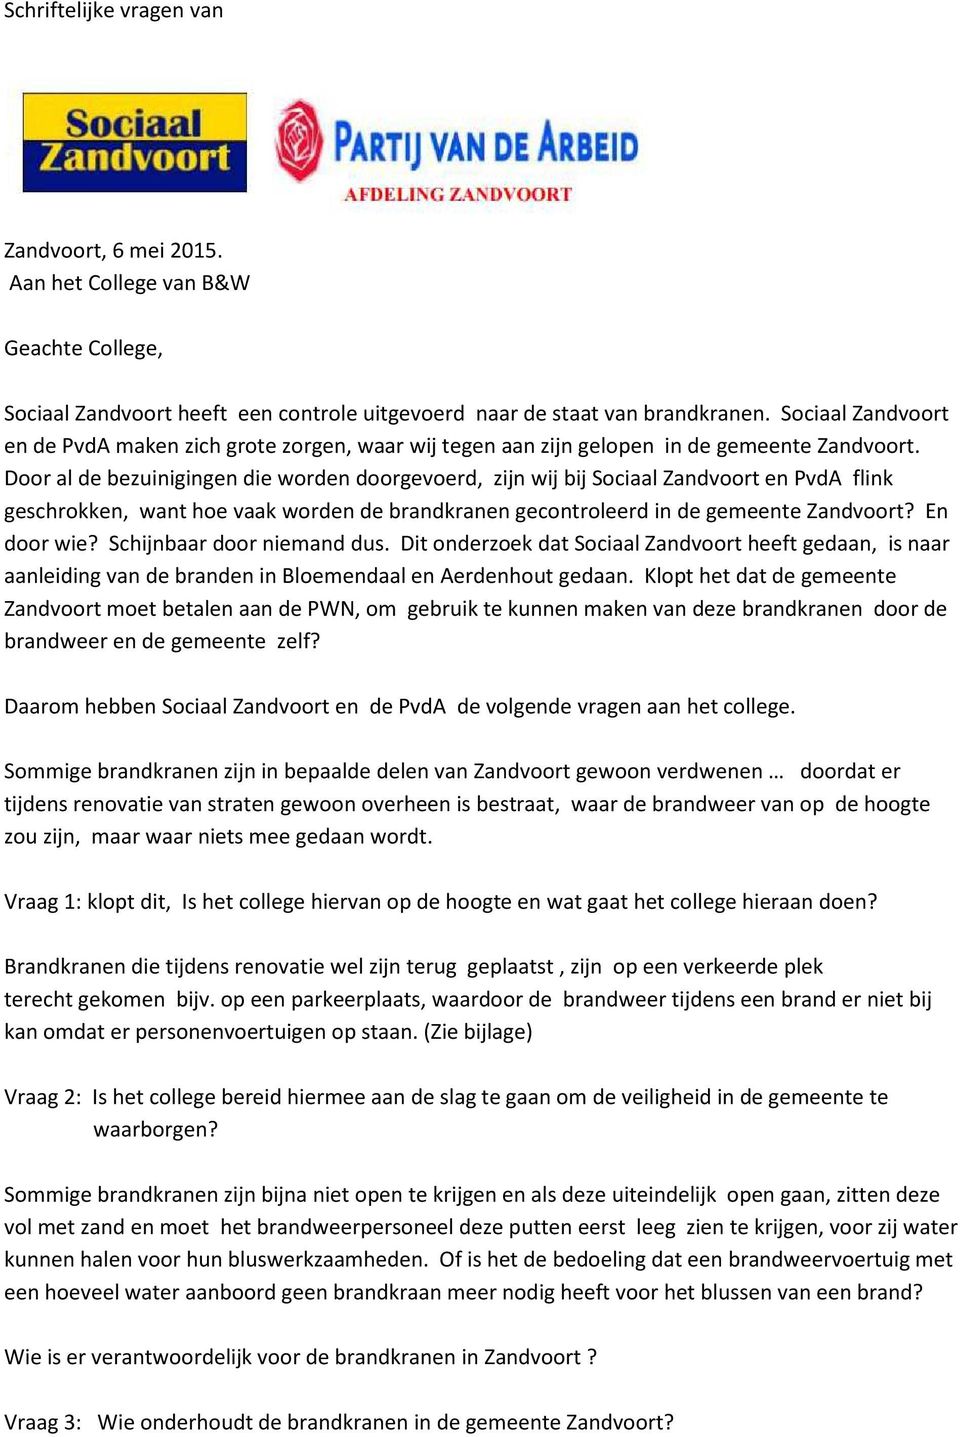 Door al de bezuinigingen die worden doorgevoerd, zijn wij bij Sociaal Zandvoort en PvdA flink geschrokken, want hoe vaak worden de brandkranen gecontroleerd in de gemeente Zandvoort? En door wie?